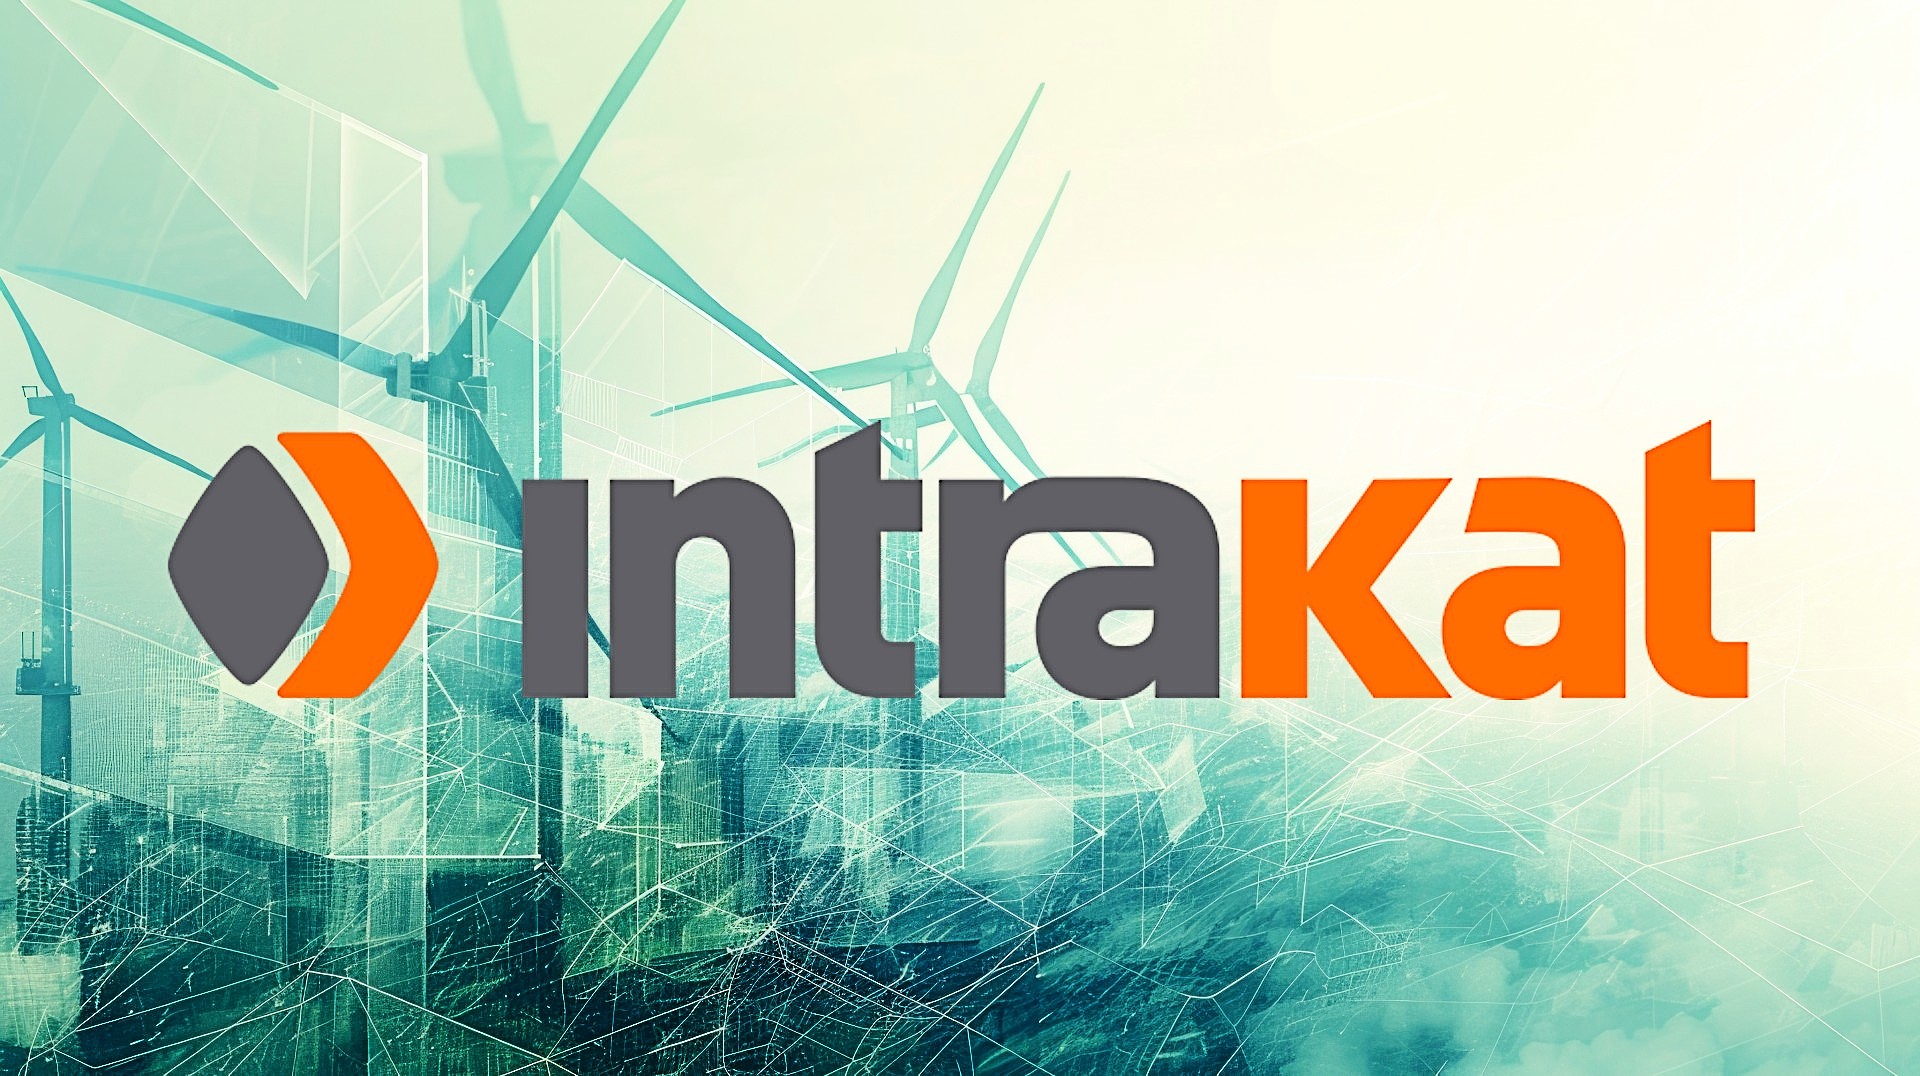 Η Intrakat ανεβαίνει… πίστες - Σε πρώτο πλάνο η ενέργεια, έρχονται νέες εξαγορές – Ο πλέον δυναμικά ανερχόμενος όμιλος κατασκευών, παραχωρήσεων και ενέργειας – Το ανεκτέλεστο – μαμούθ και οι νέες στοχεύσεις!